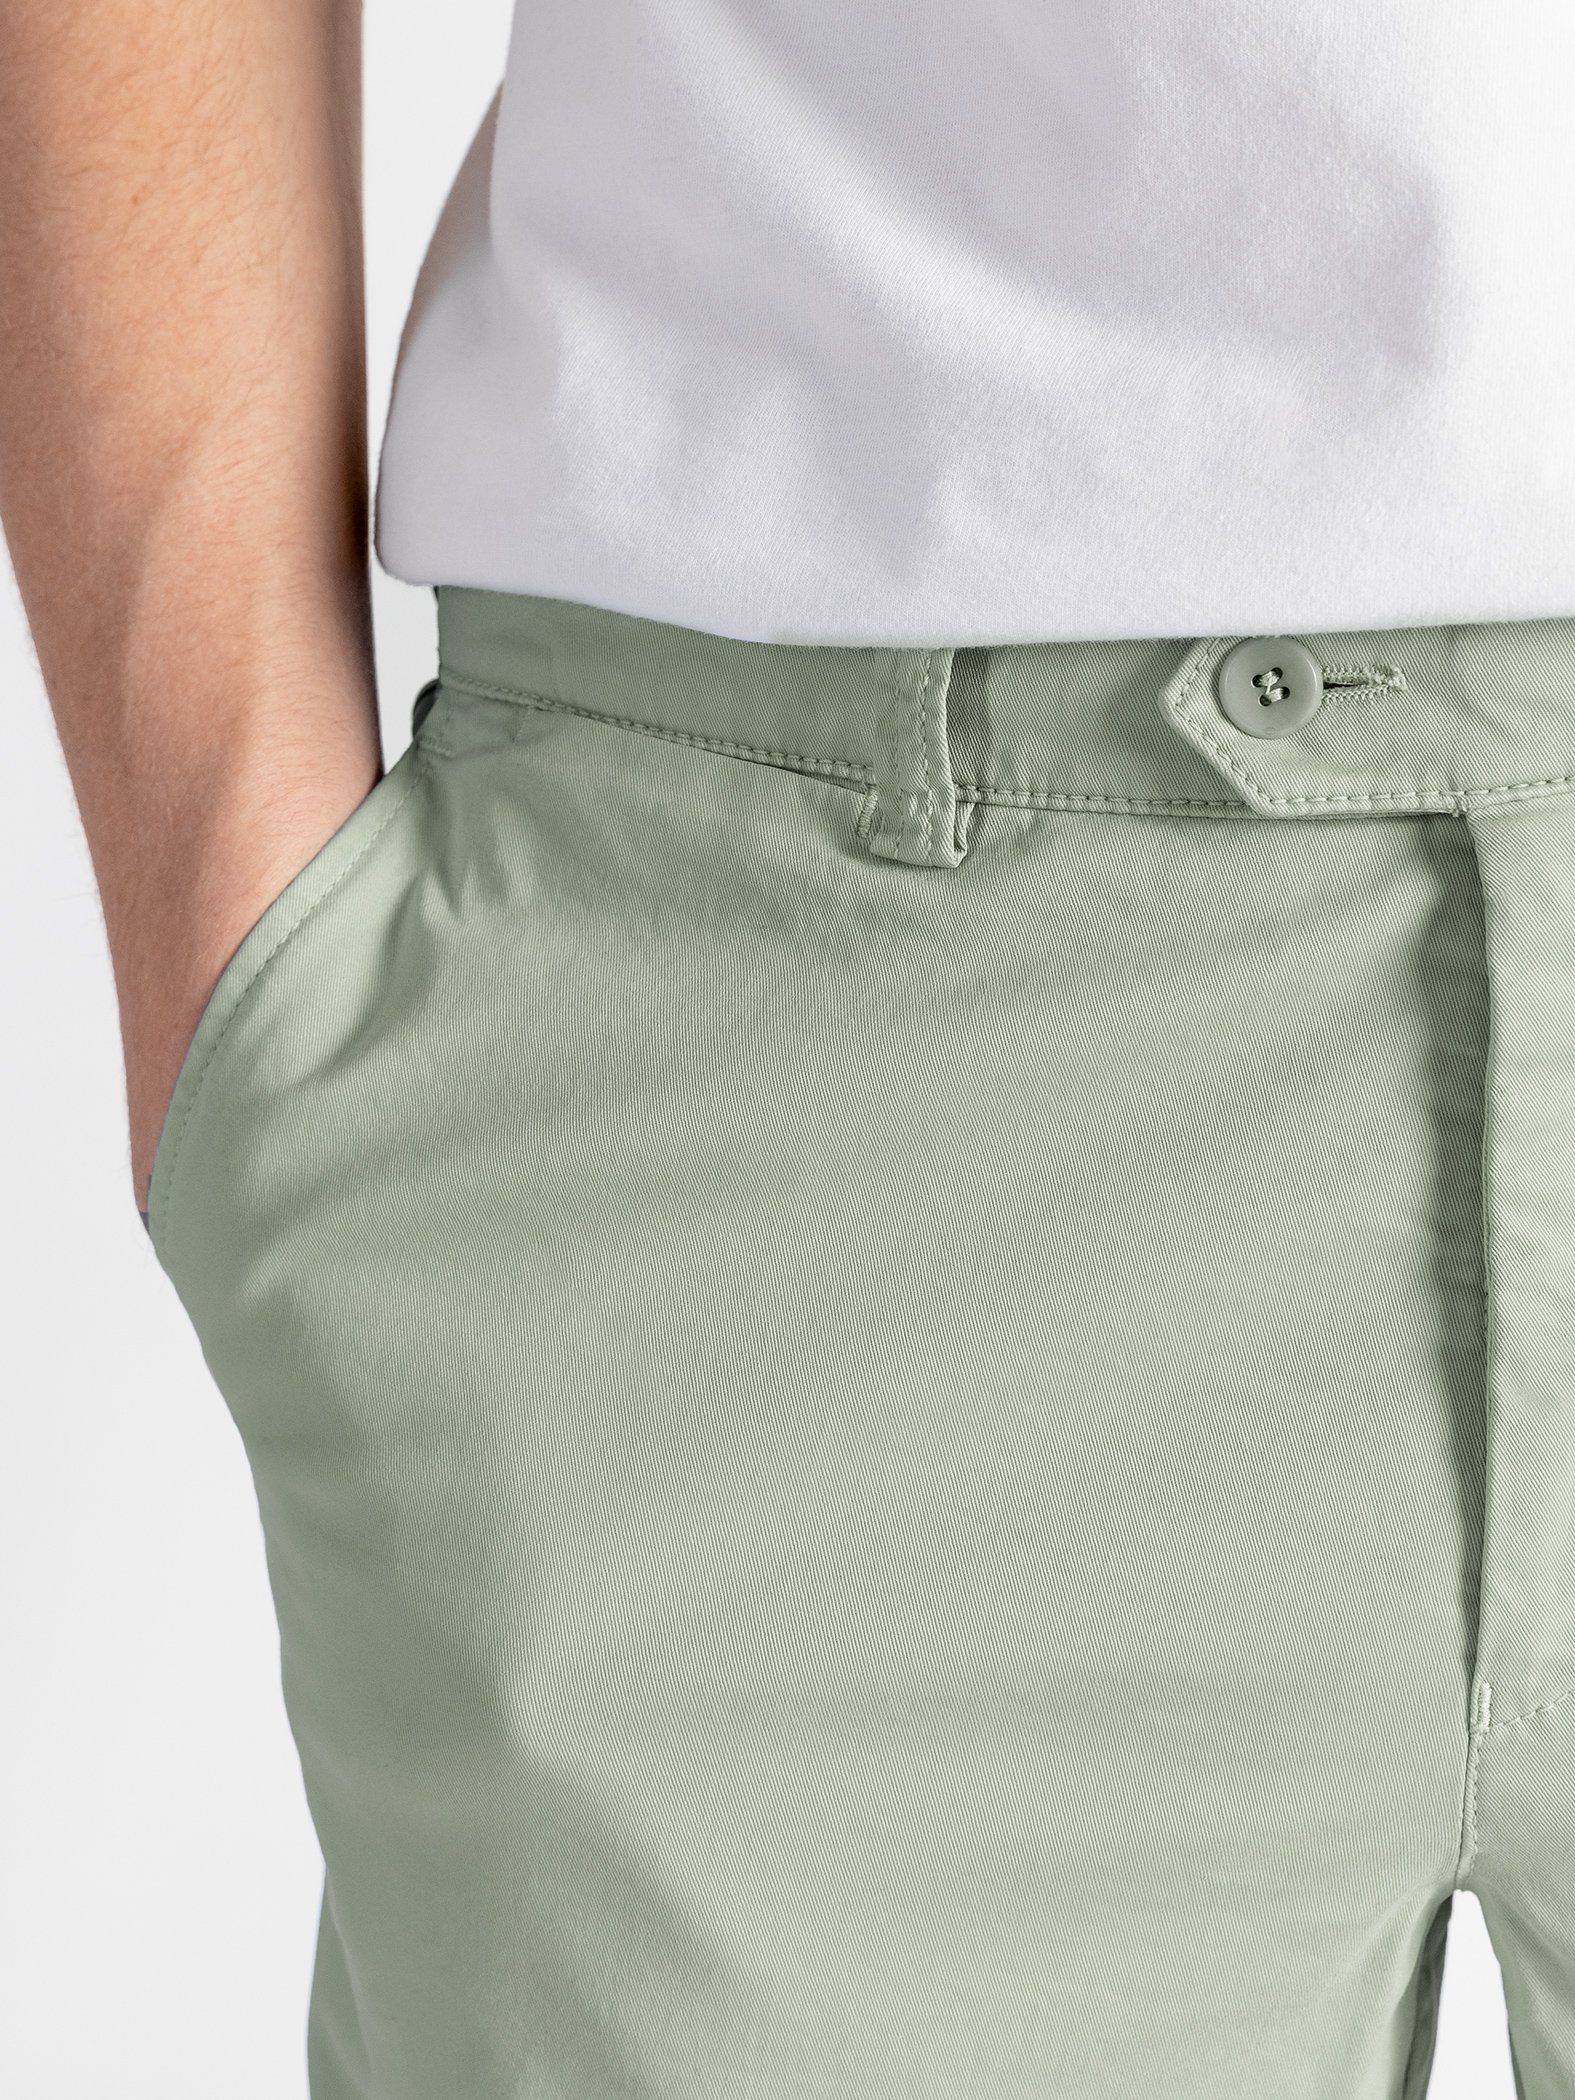 TwoMates Shorts Shorts mit hellgrün Farbauswahl, Bund, GOTS-zertifiziert elastischem